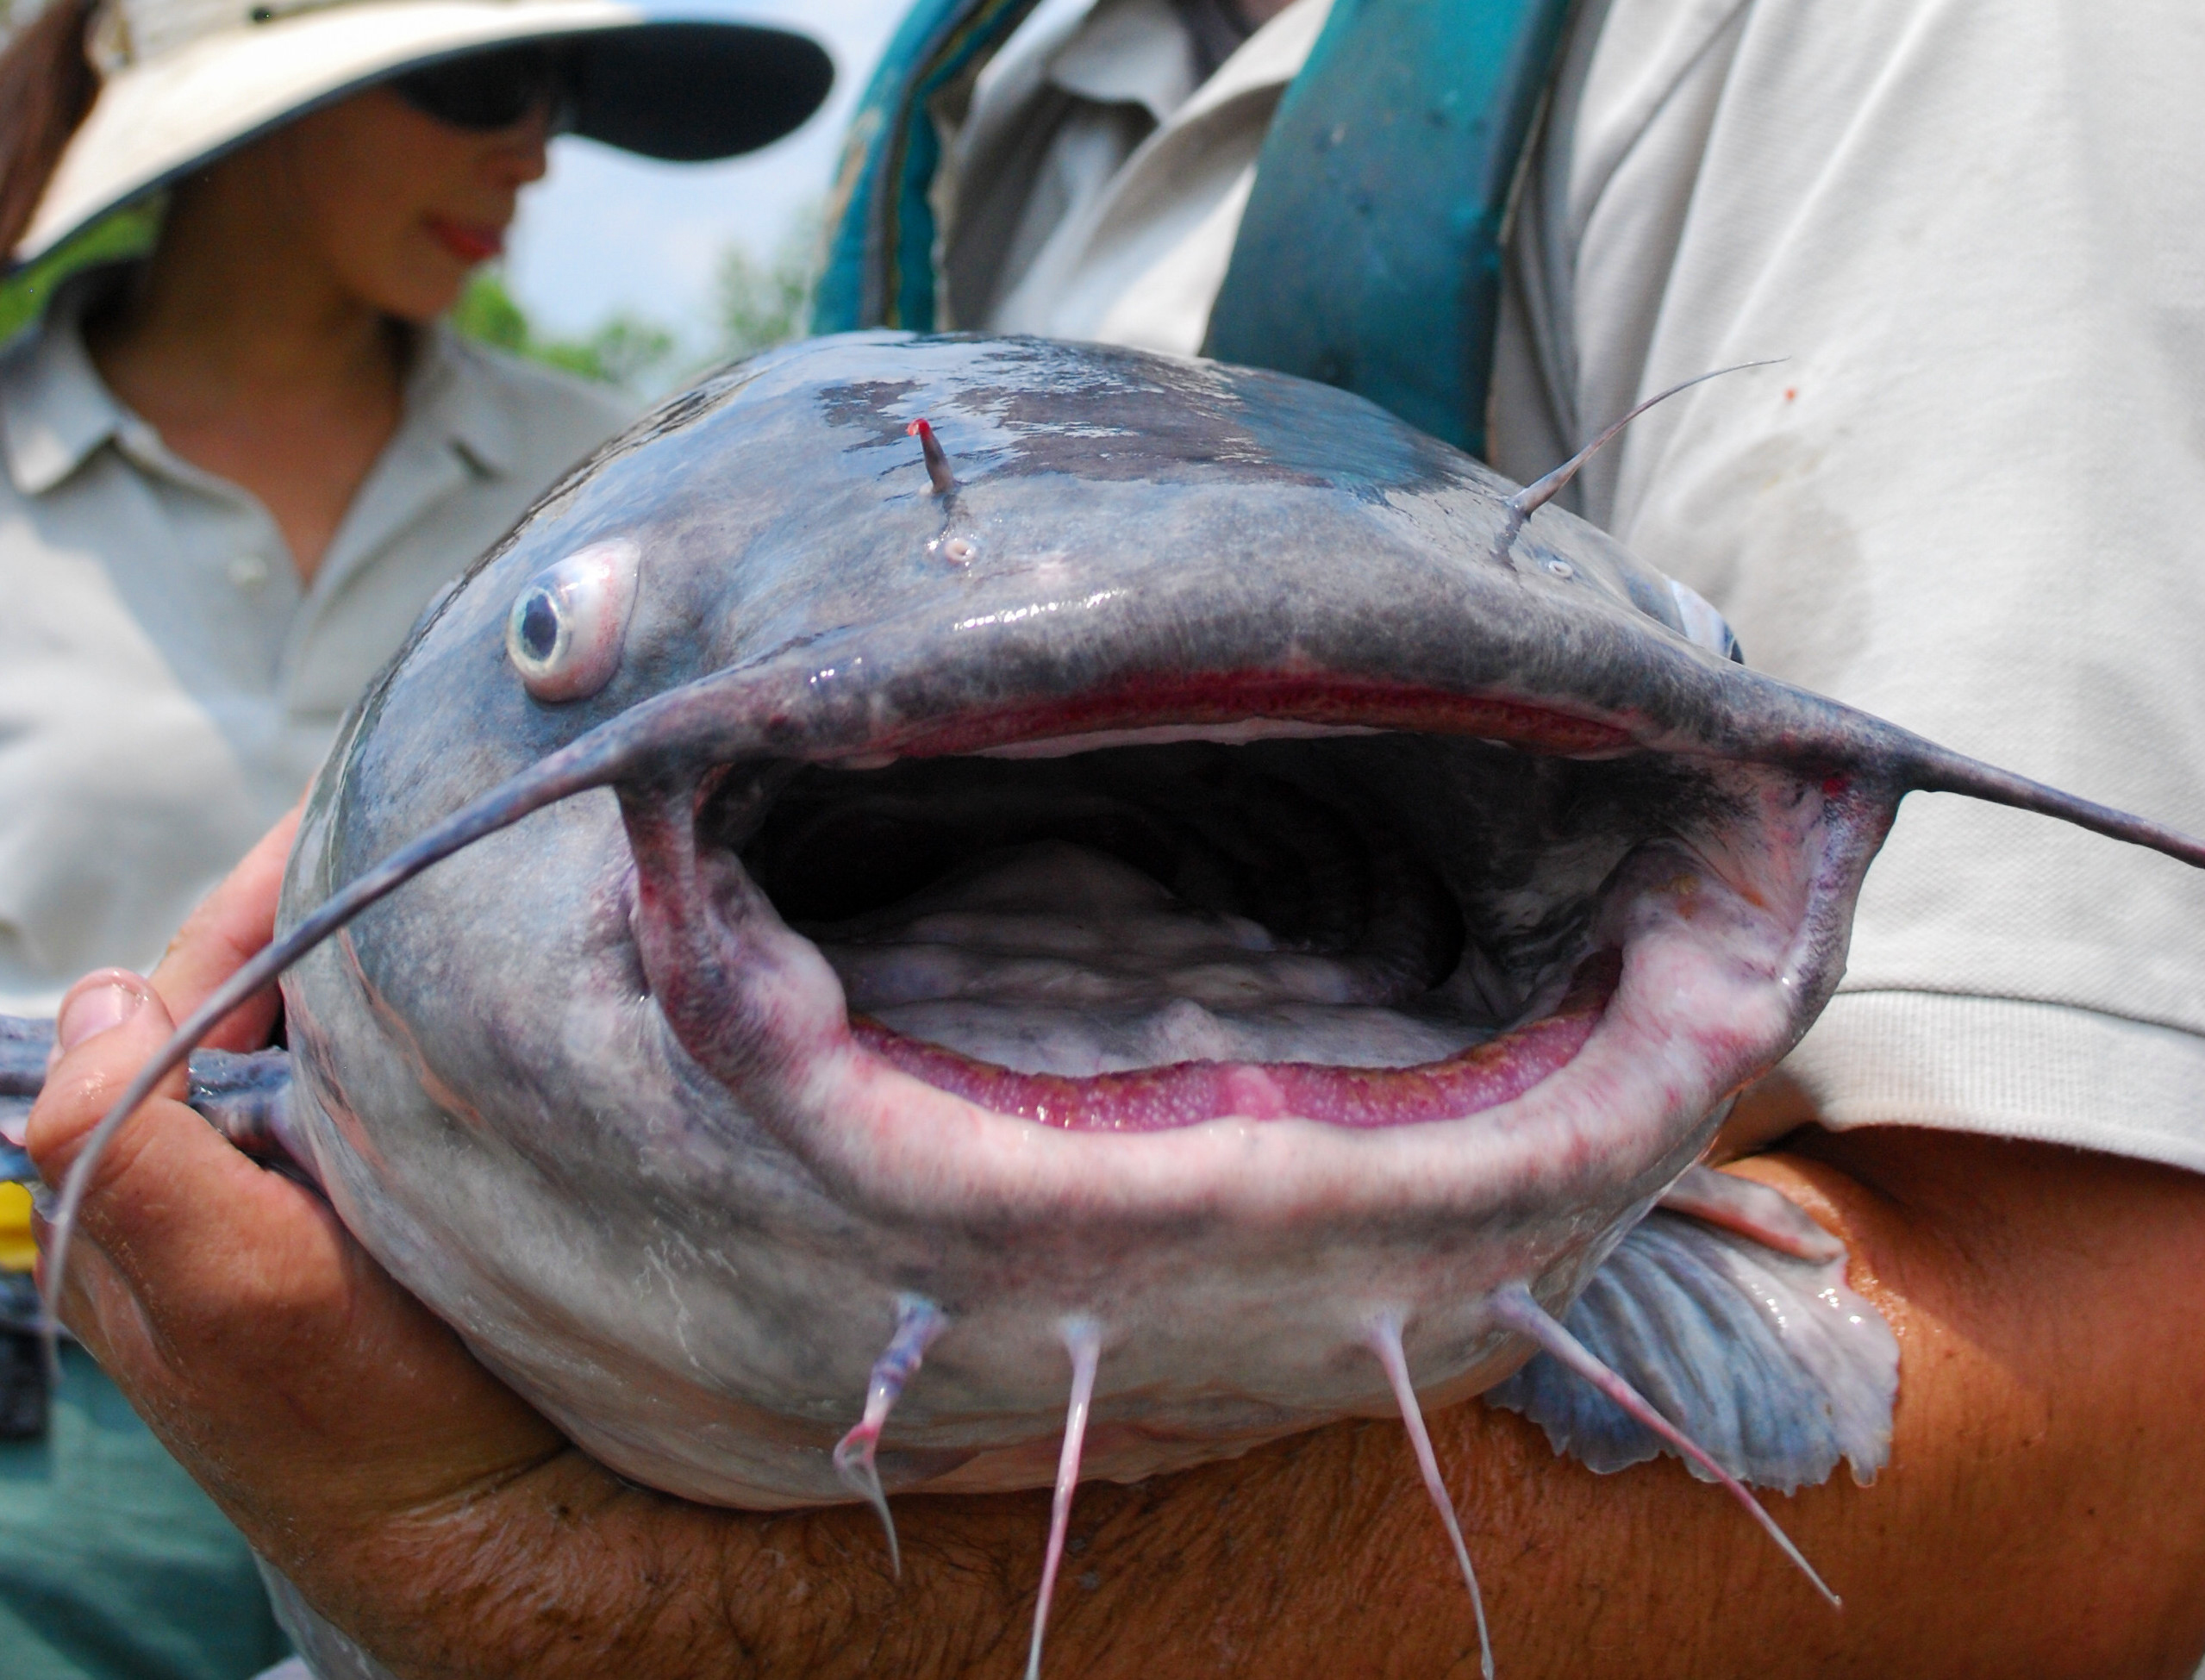 Does Hand-Crank Electrofishing Help Battle Invasive Catfish